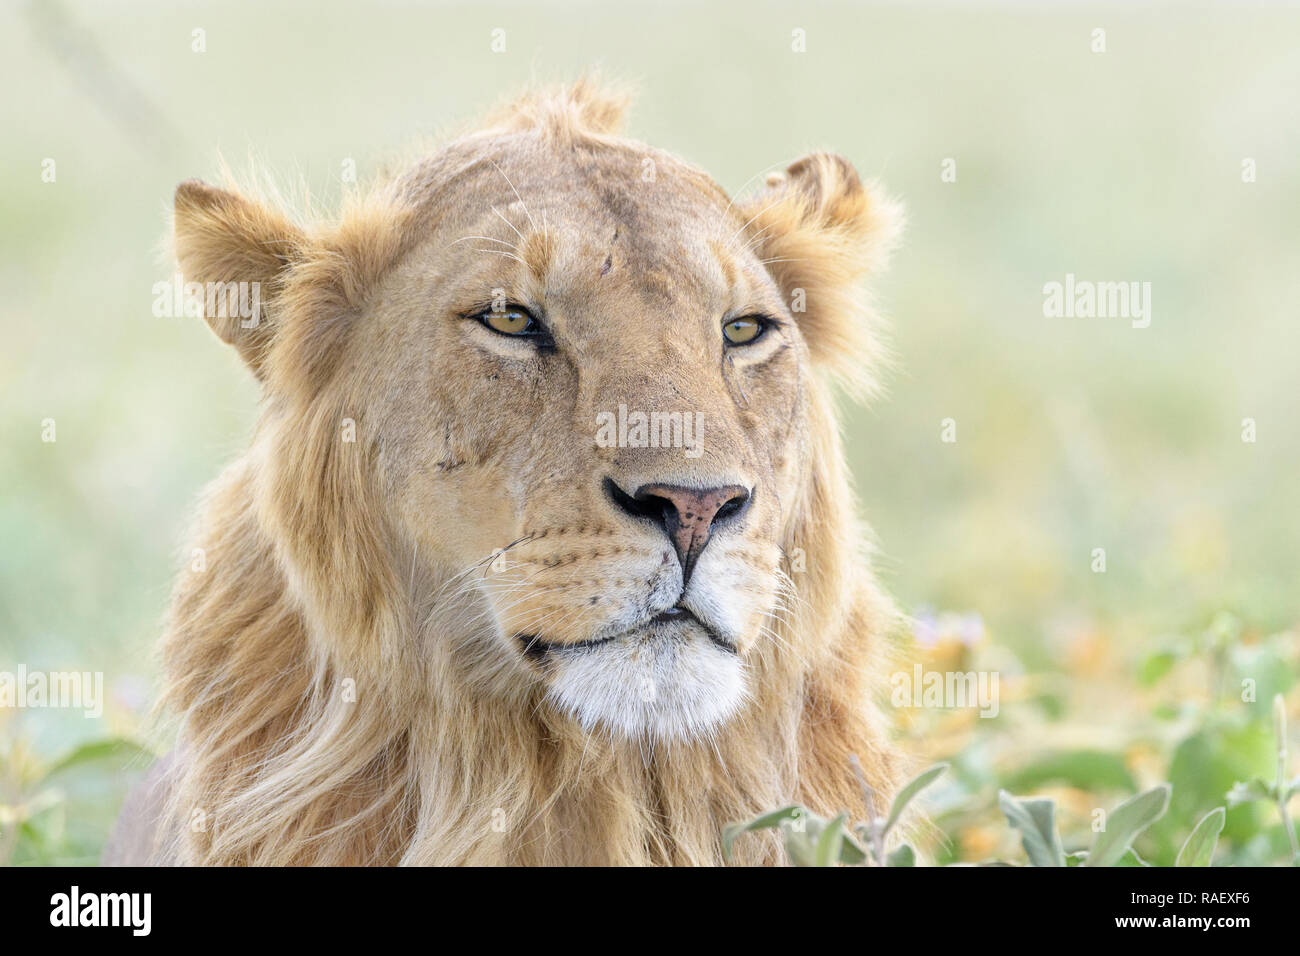 Male lion (Panthera leo) portrait, zone de conservation de Ngorongoro, en Tanzanie. Banque D'Images